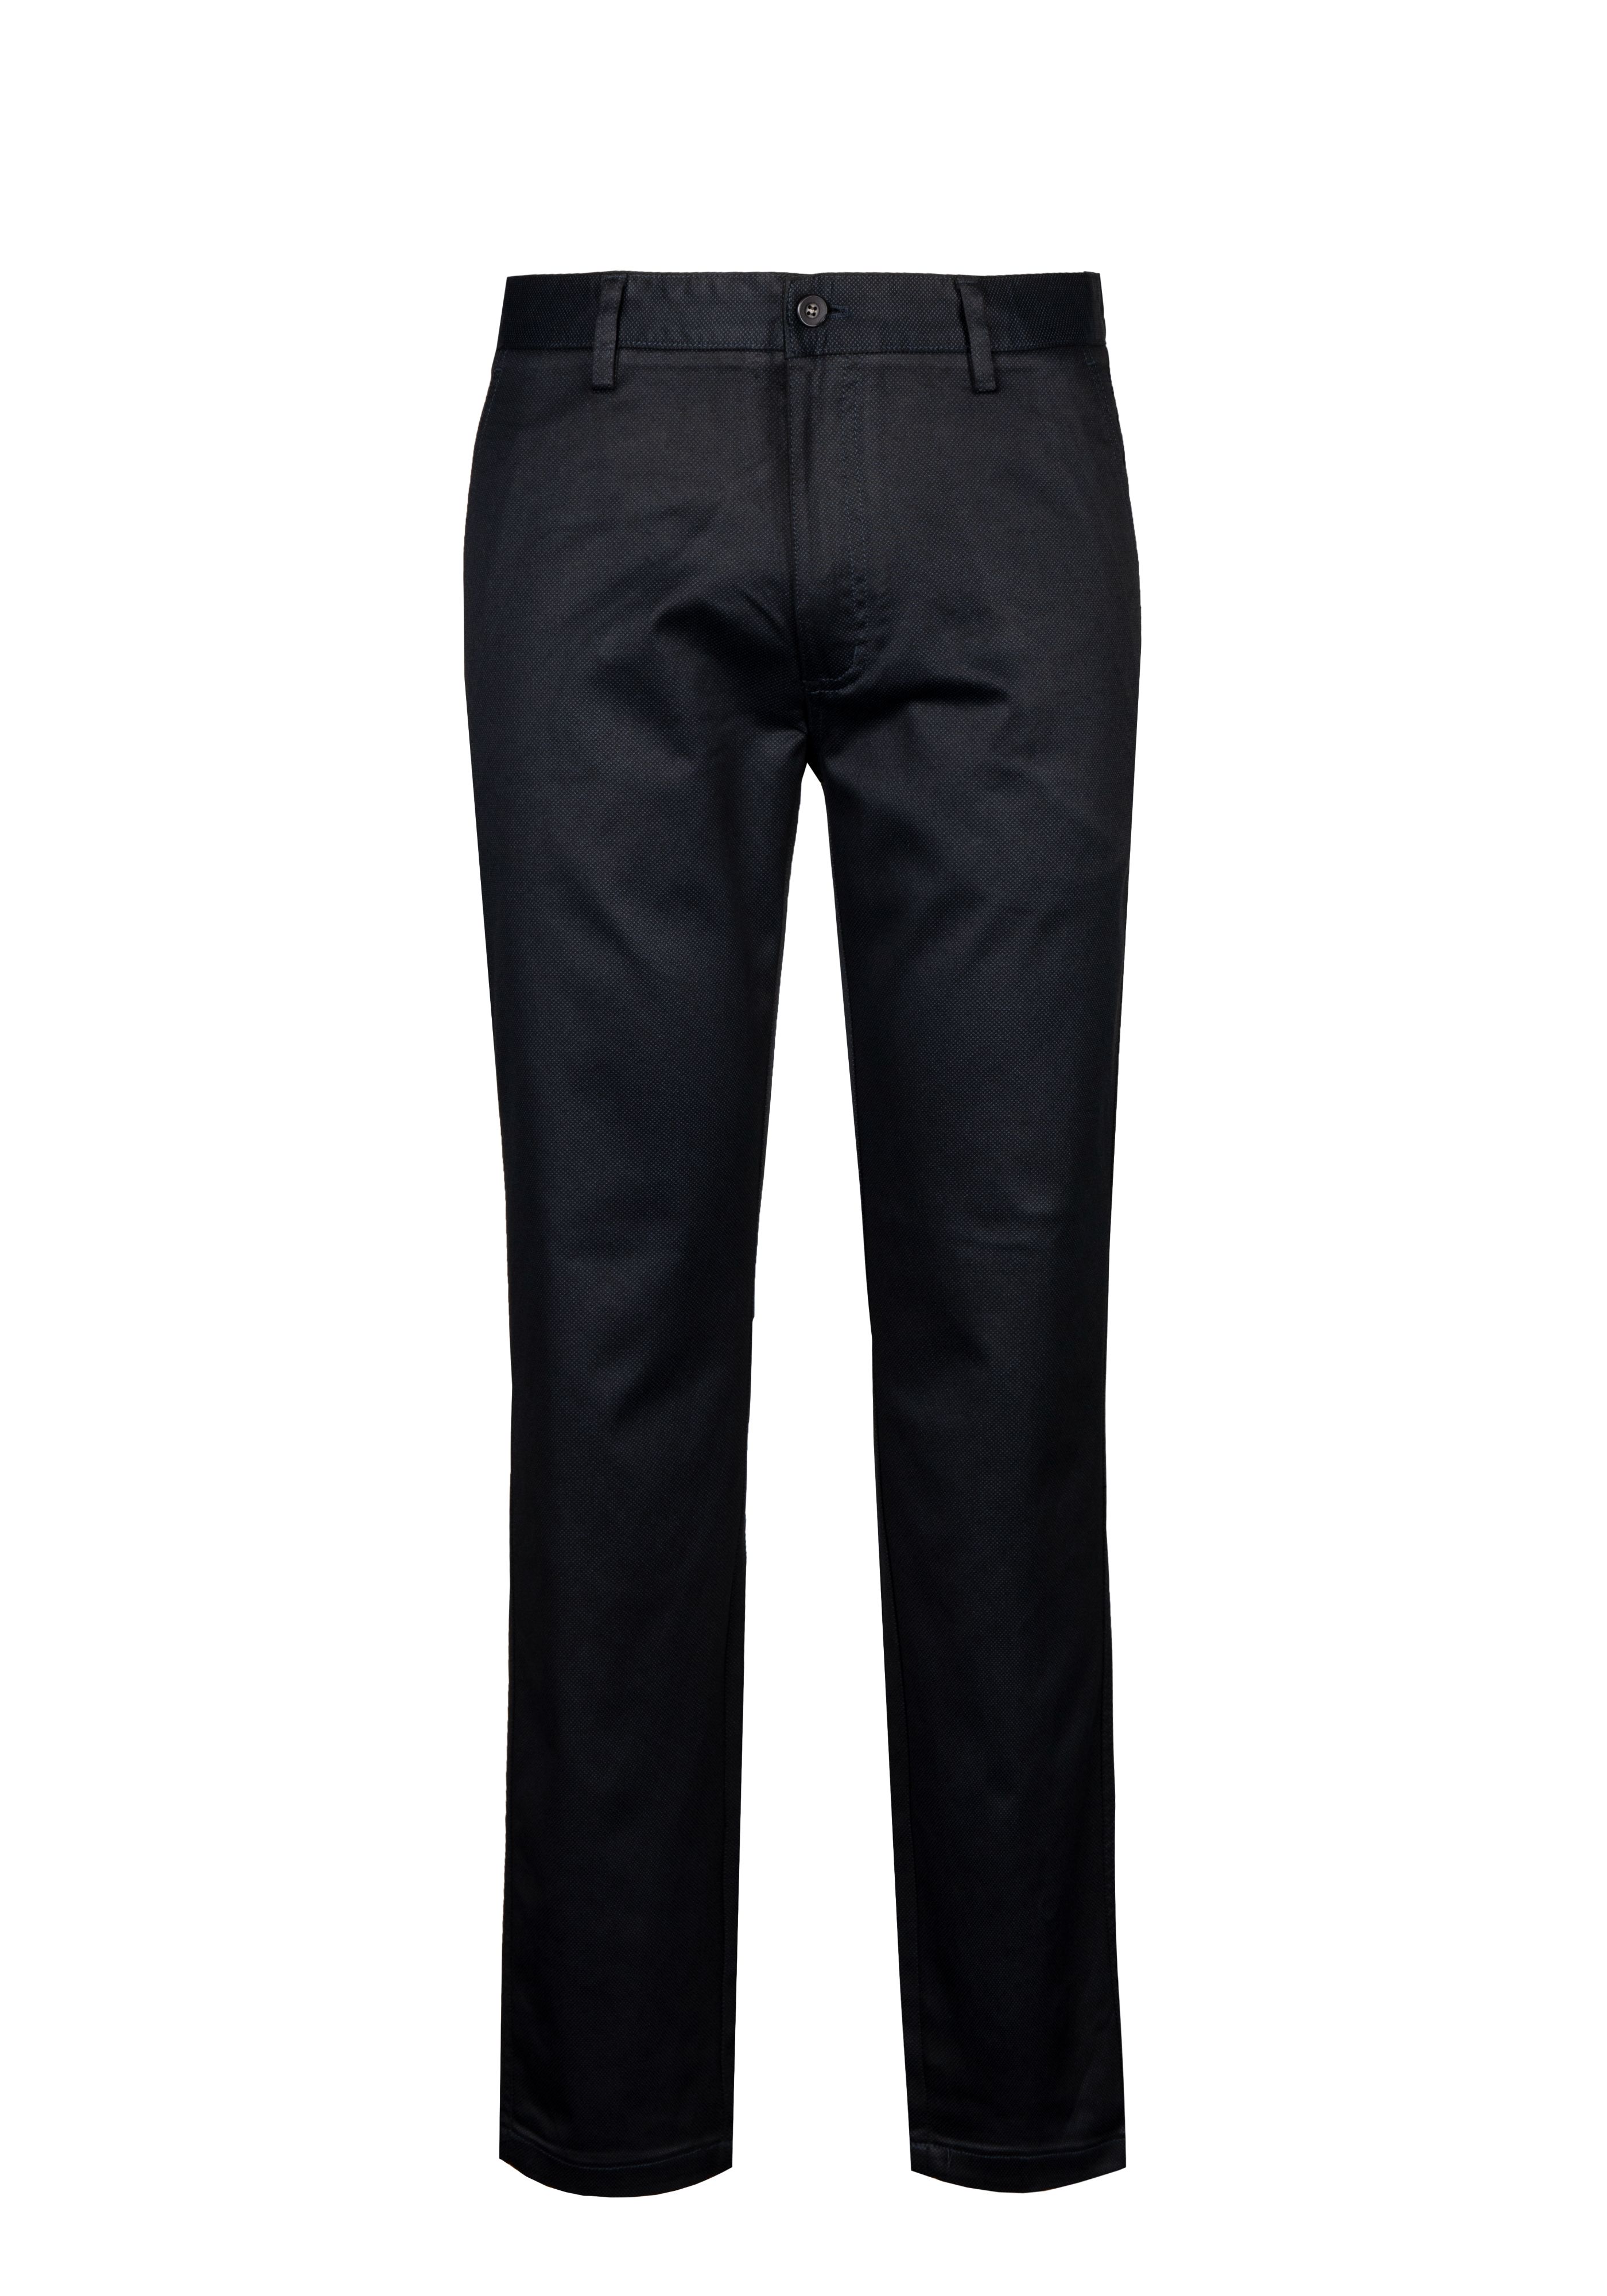 Goldlion Casual Pants Trim Fit - Black (RMC412LP23T-99)